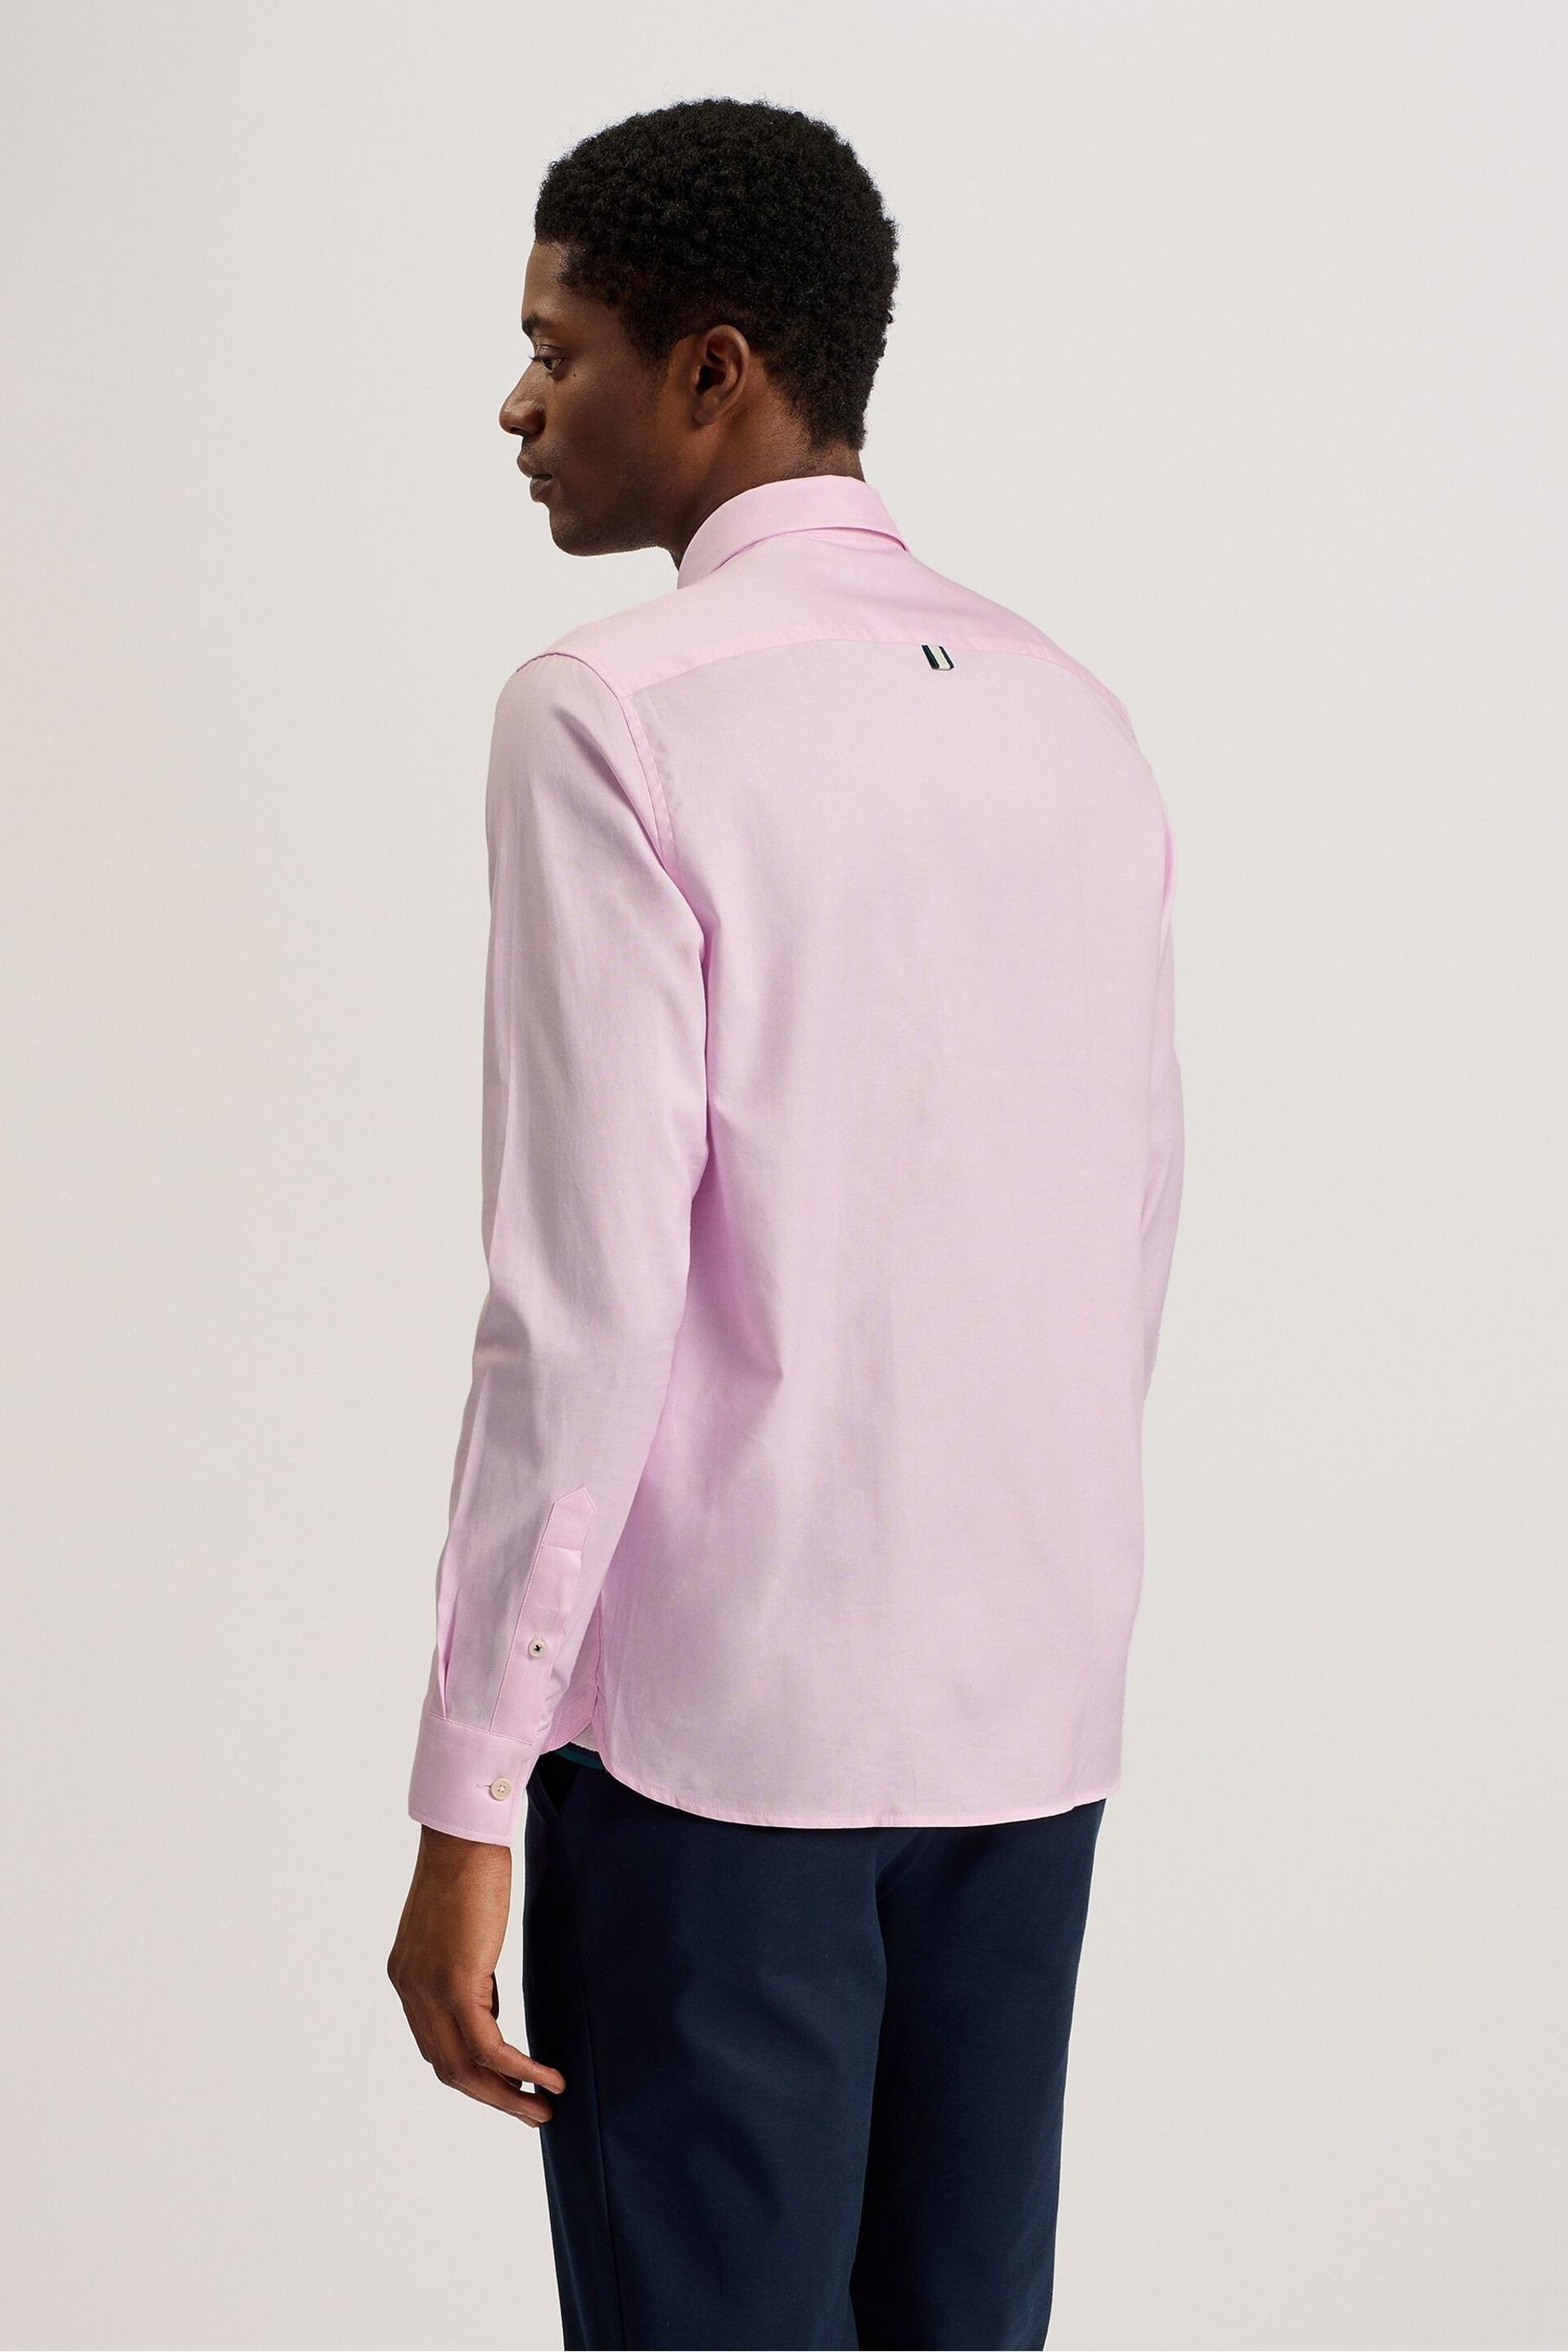 Ted Baker Pink Regular Allardo Premium Oxford Shirt - Image 5 of 6